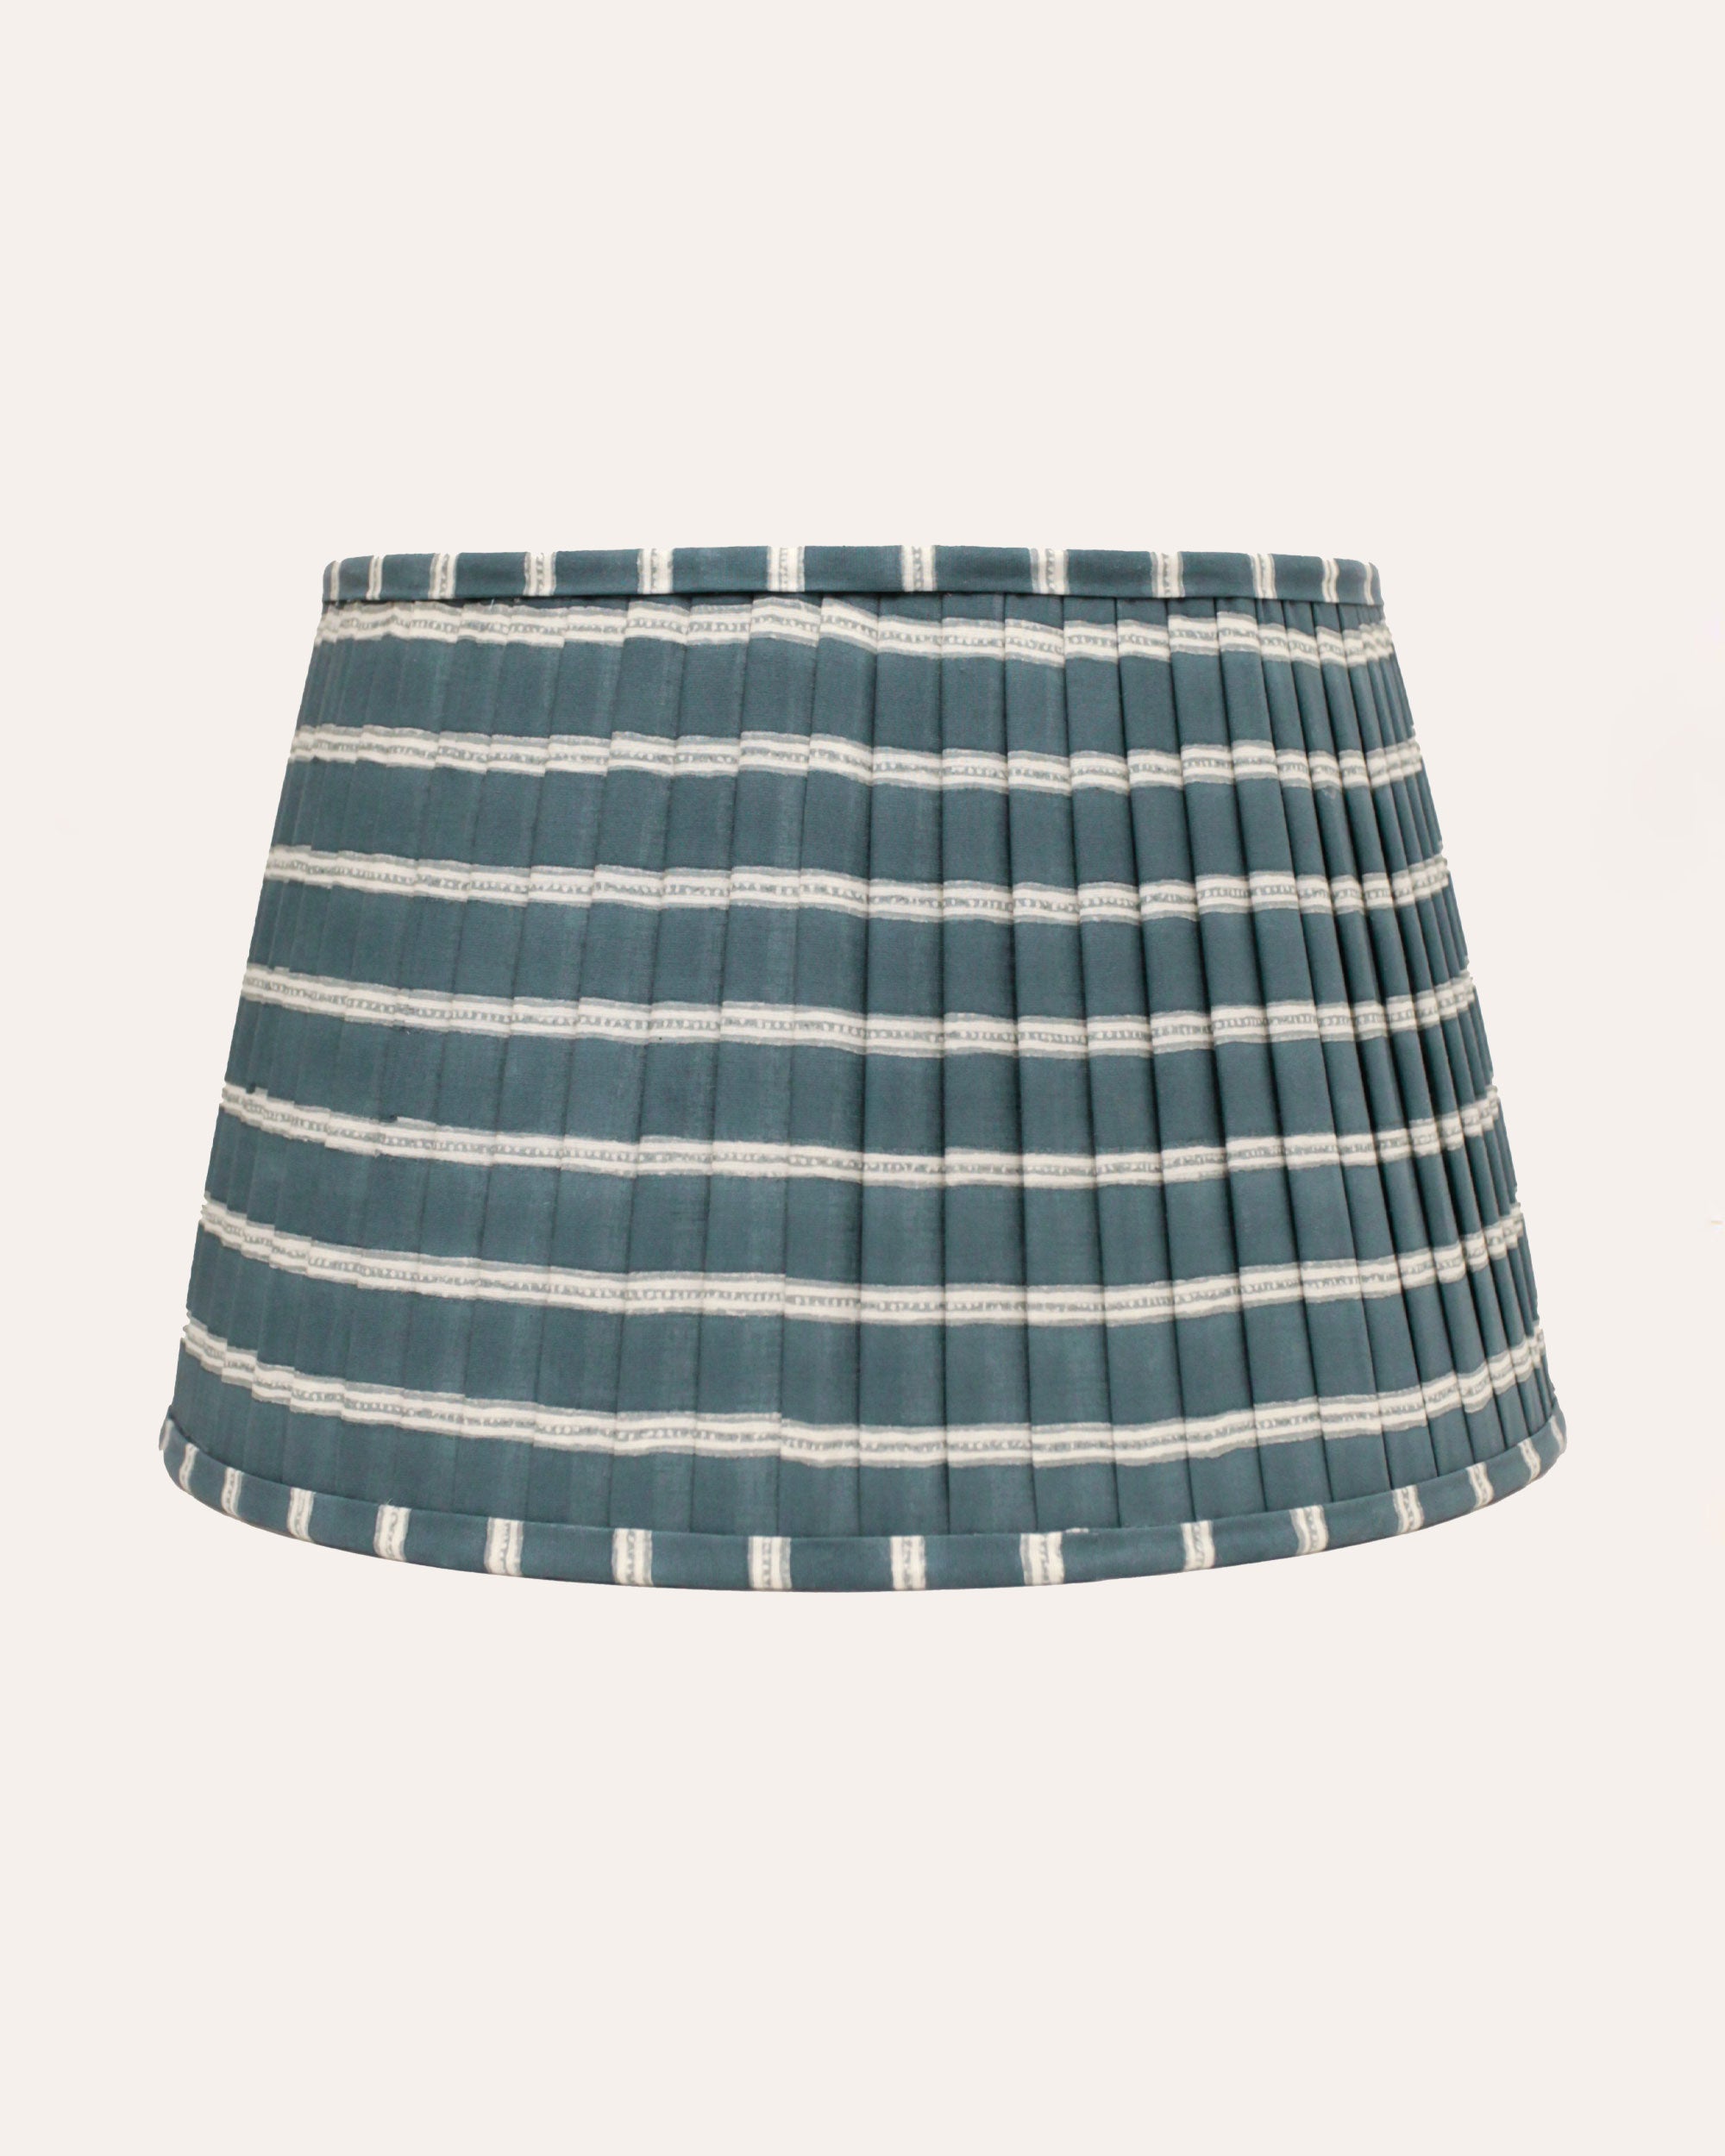 Edo Stripe Pleated Lampshade - Indigo Blue